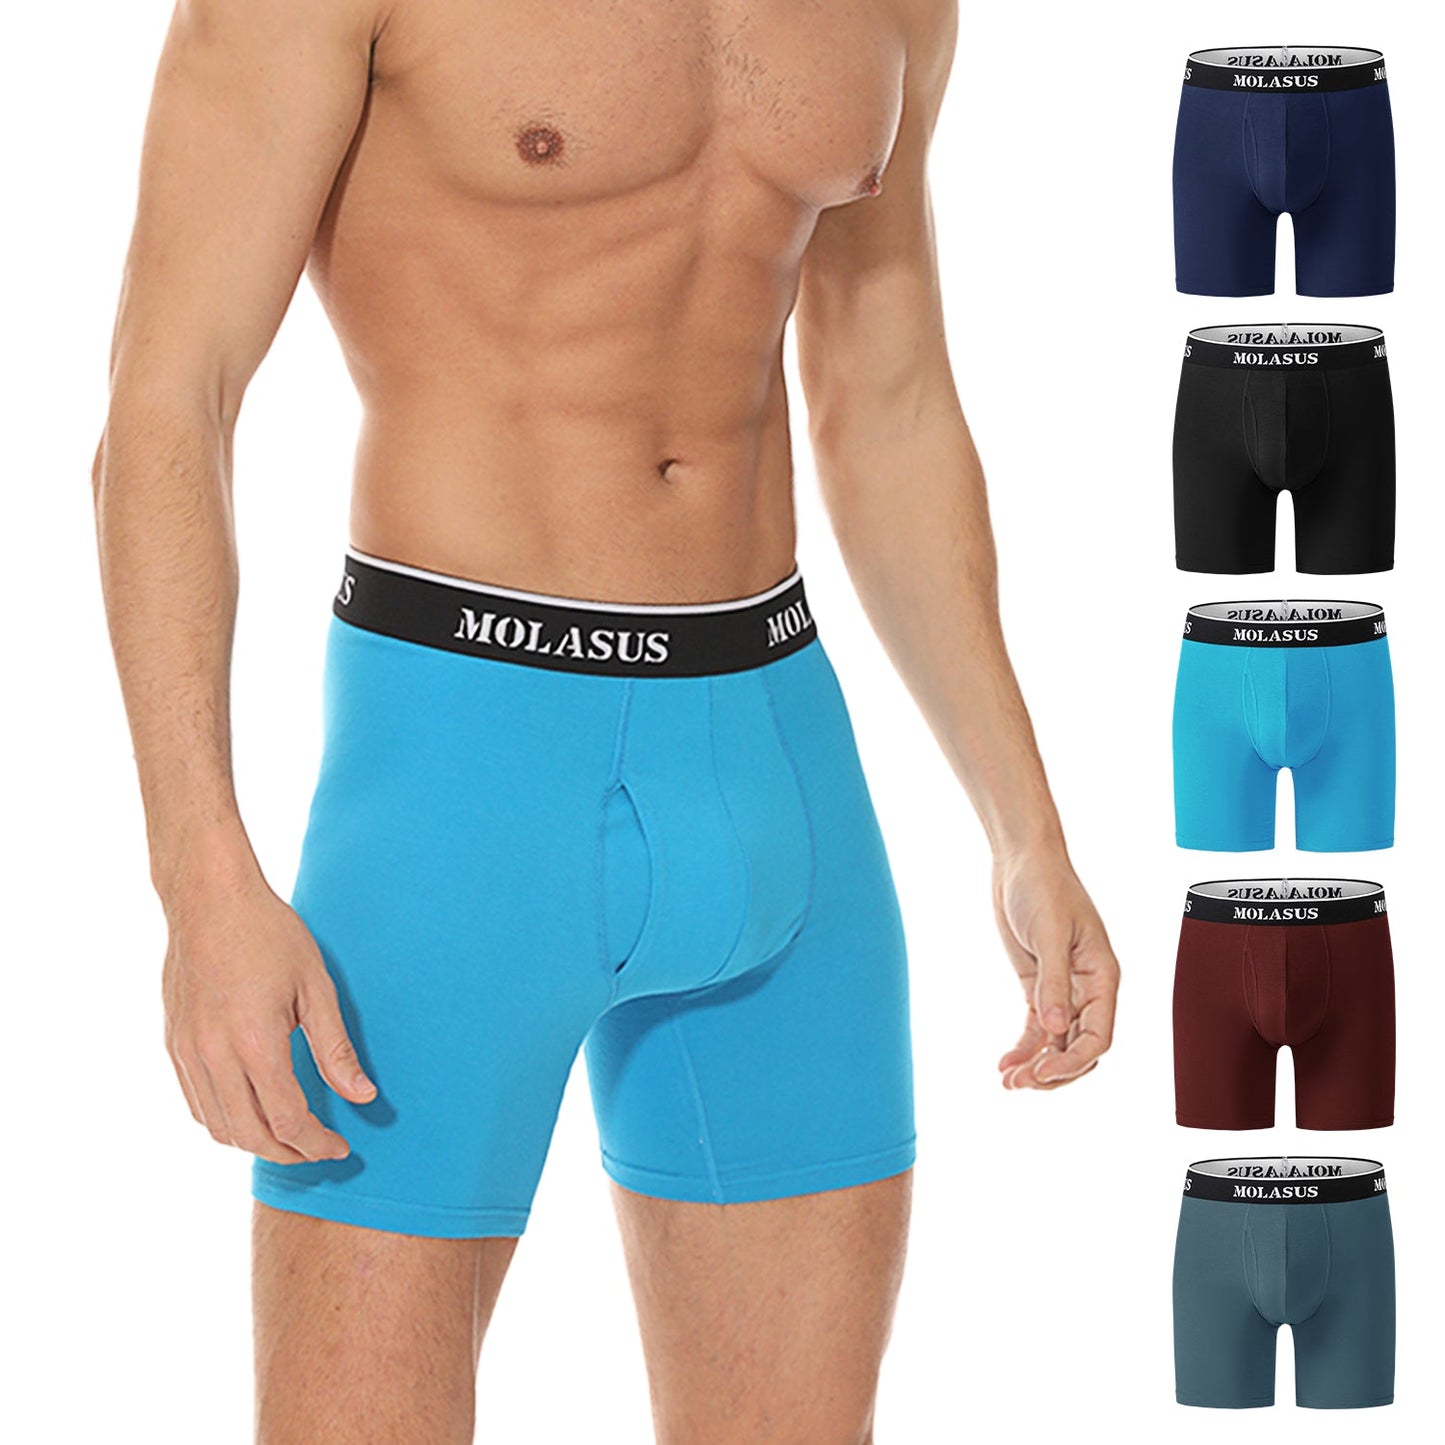 95% Cotton 5% Spandex Man Underwear Blue Men’s Underwear/Brief, Size (L)